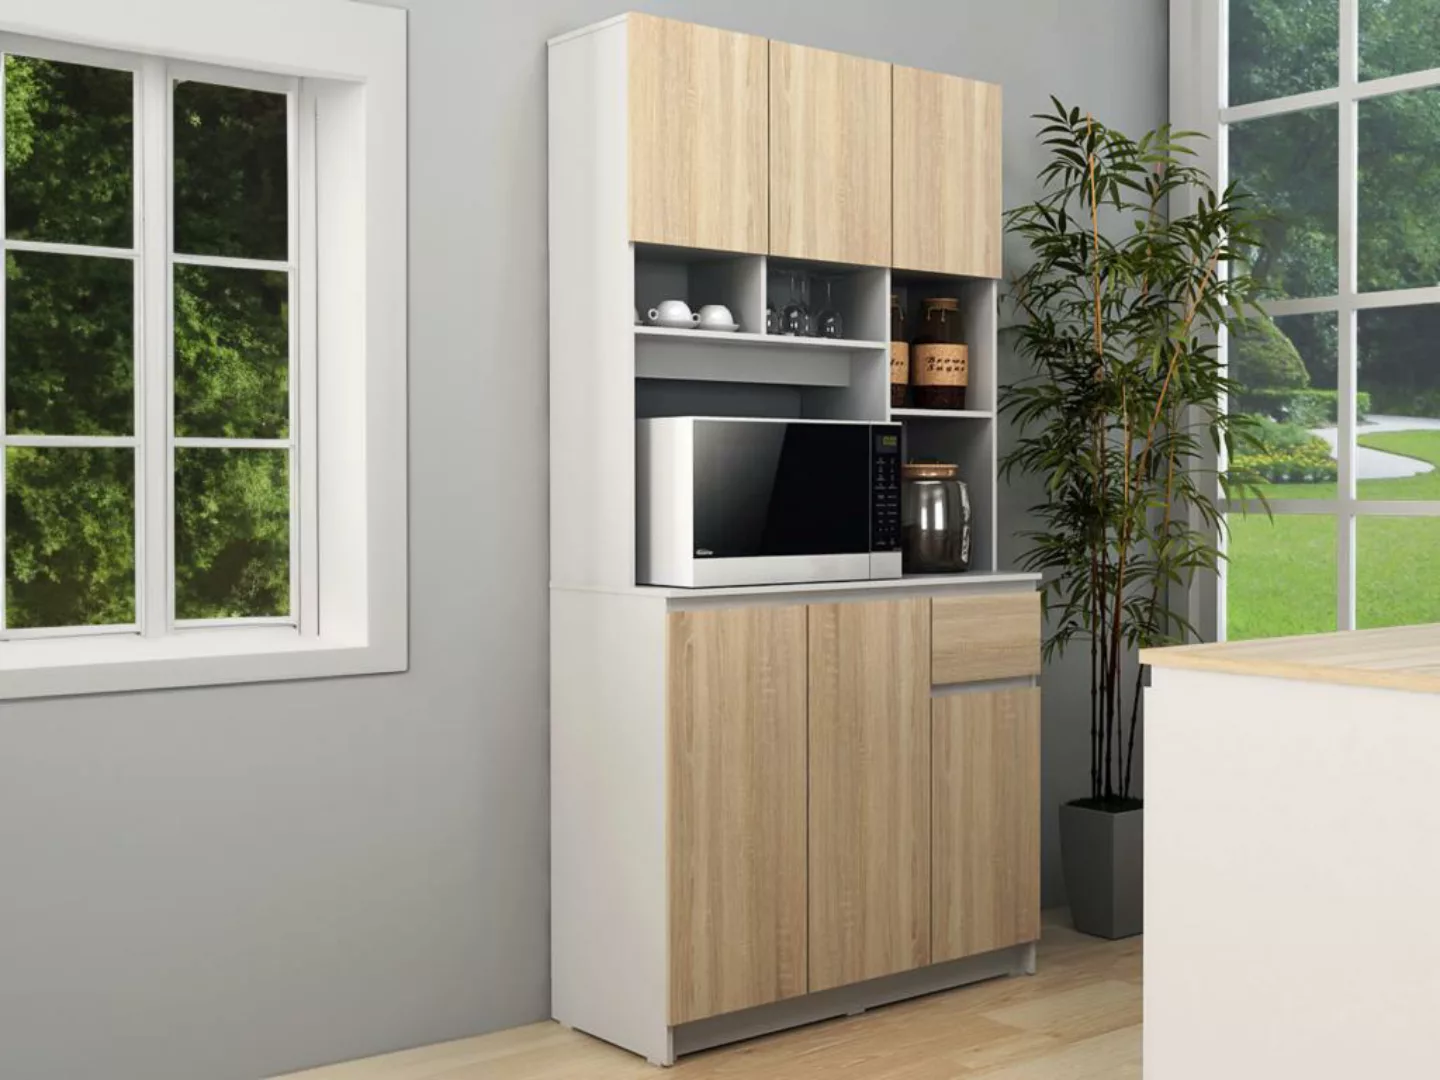 Küchenbuffet mit 6 Türen, 1 Schubladen & 5 Regalfächern - Helle Holzfarben günstig online kaufen